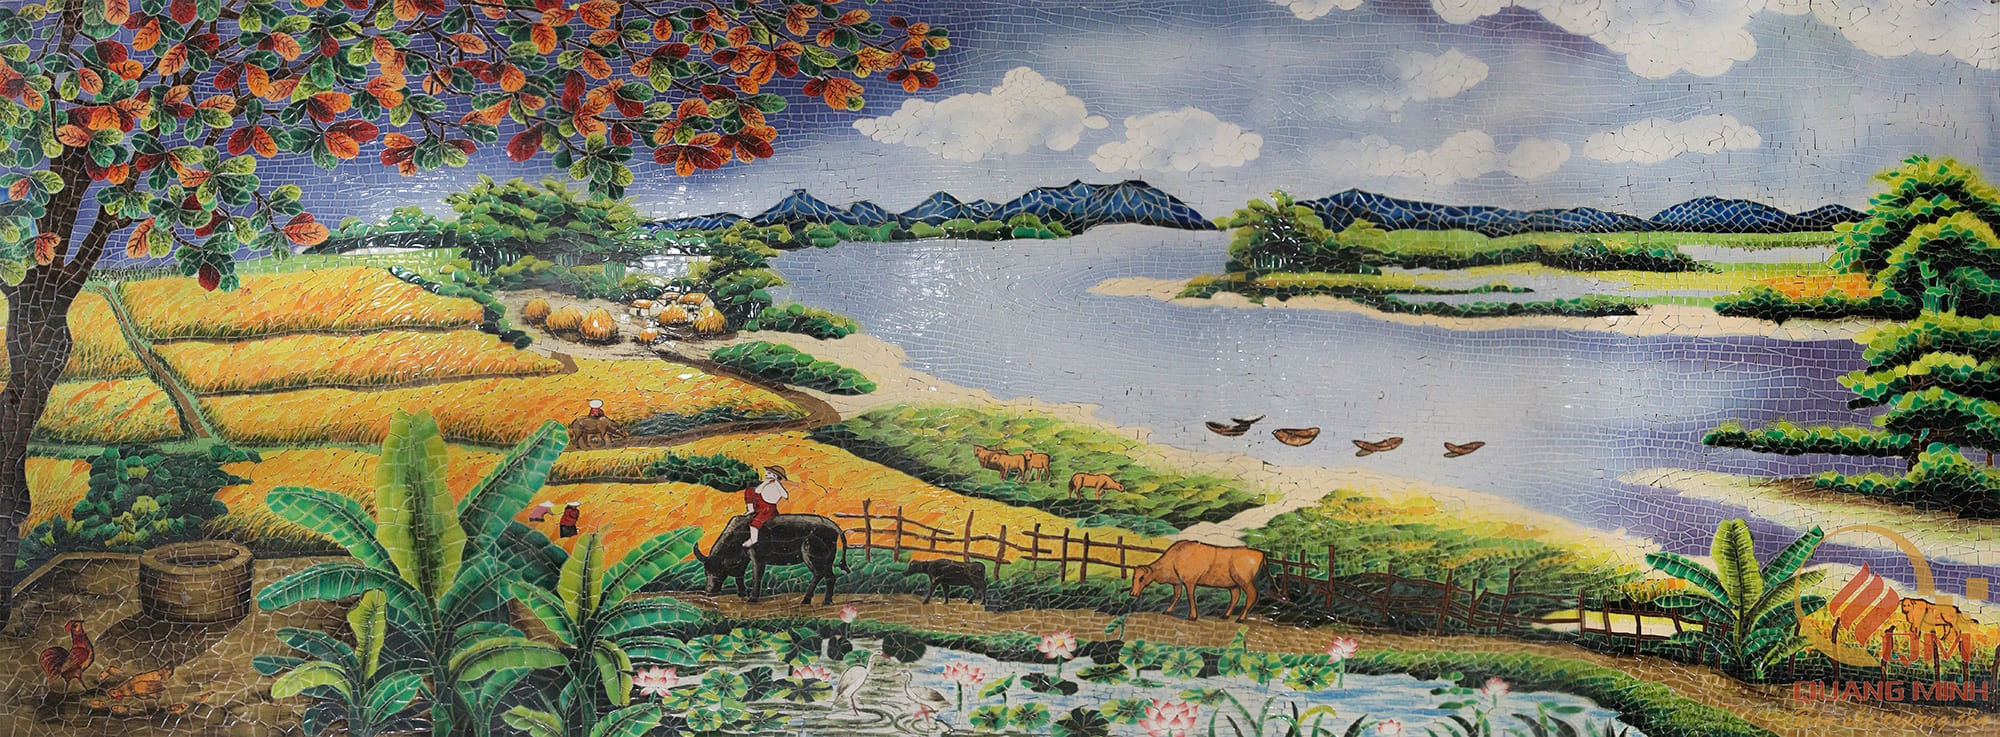 Tranh mosaic phong cảnh đồng lúa